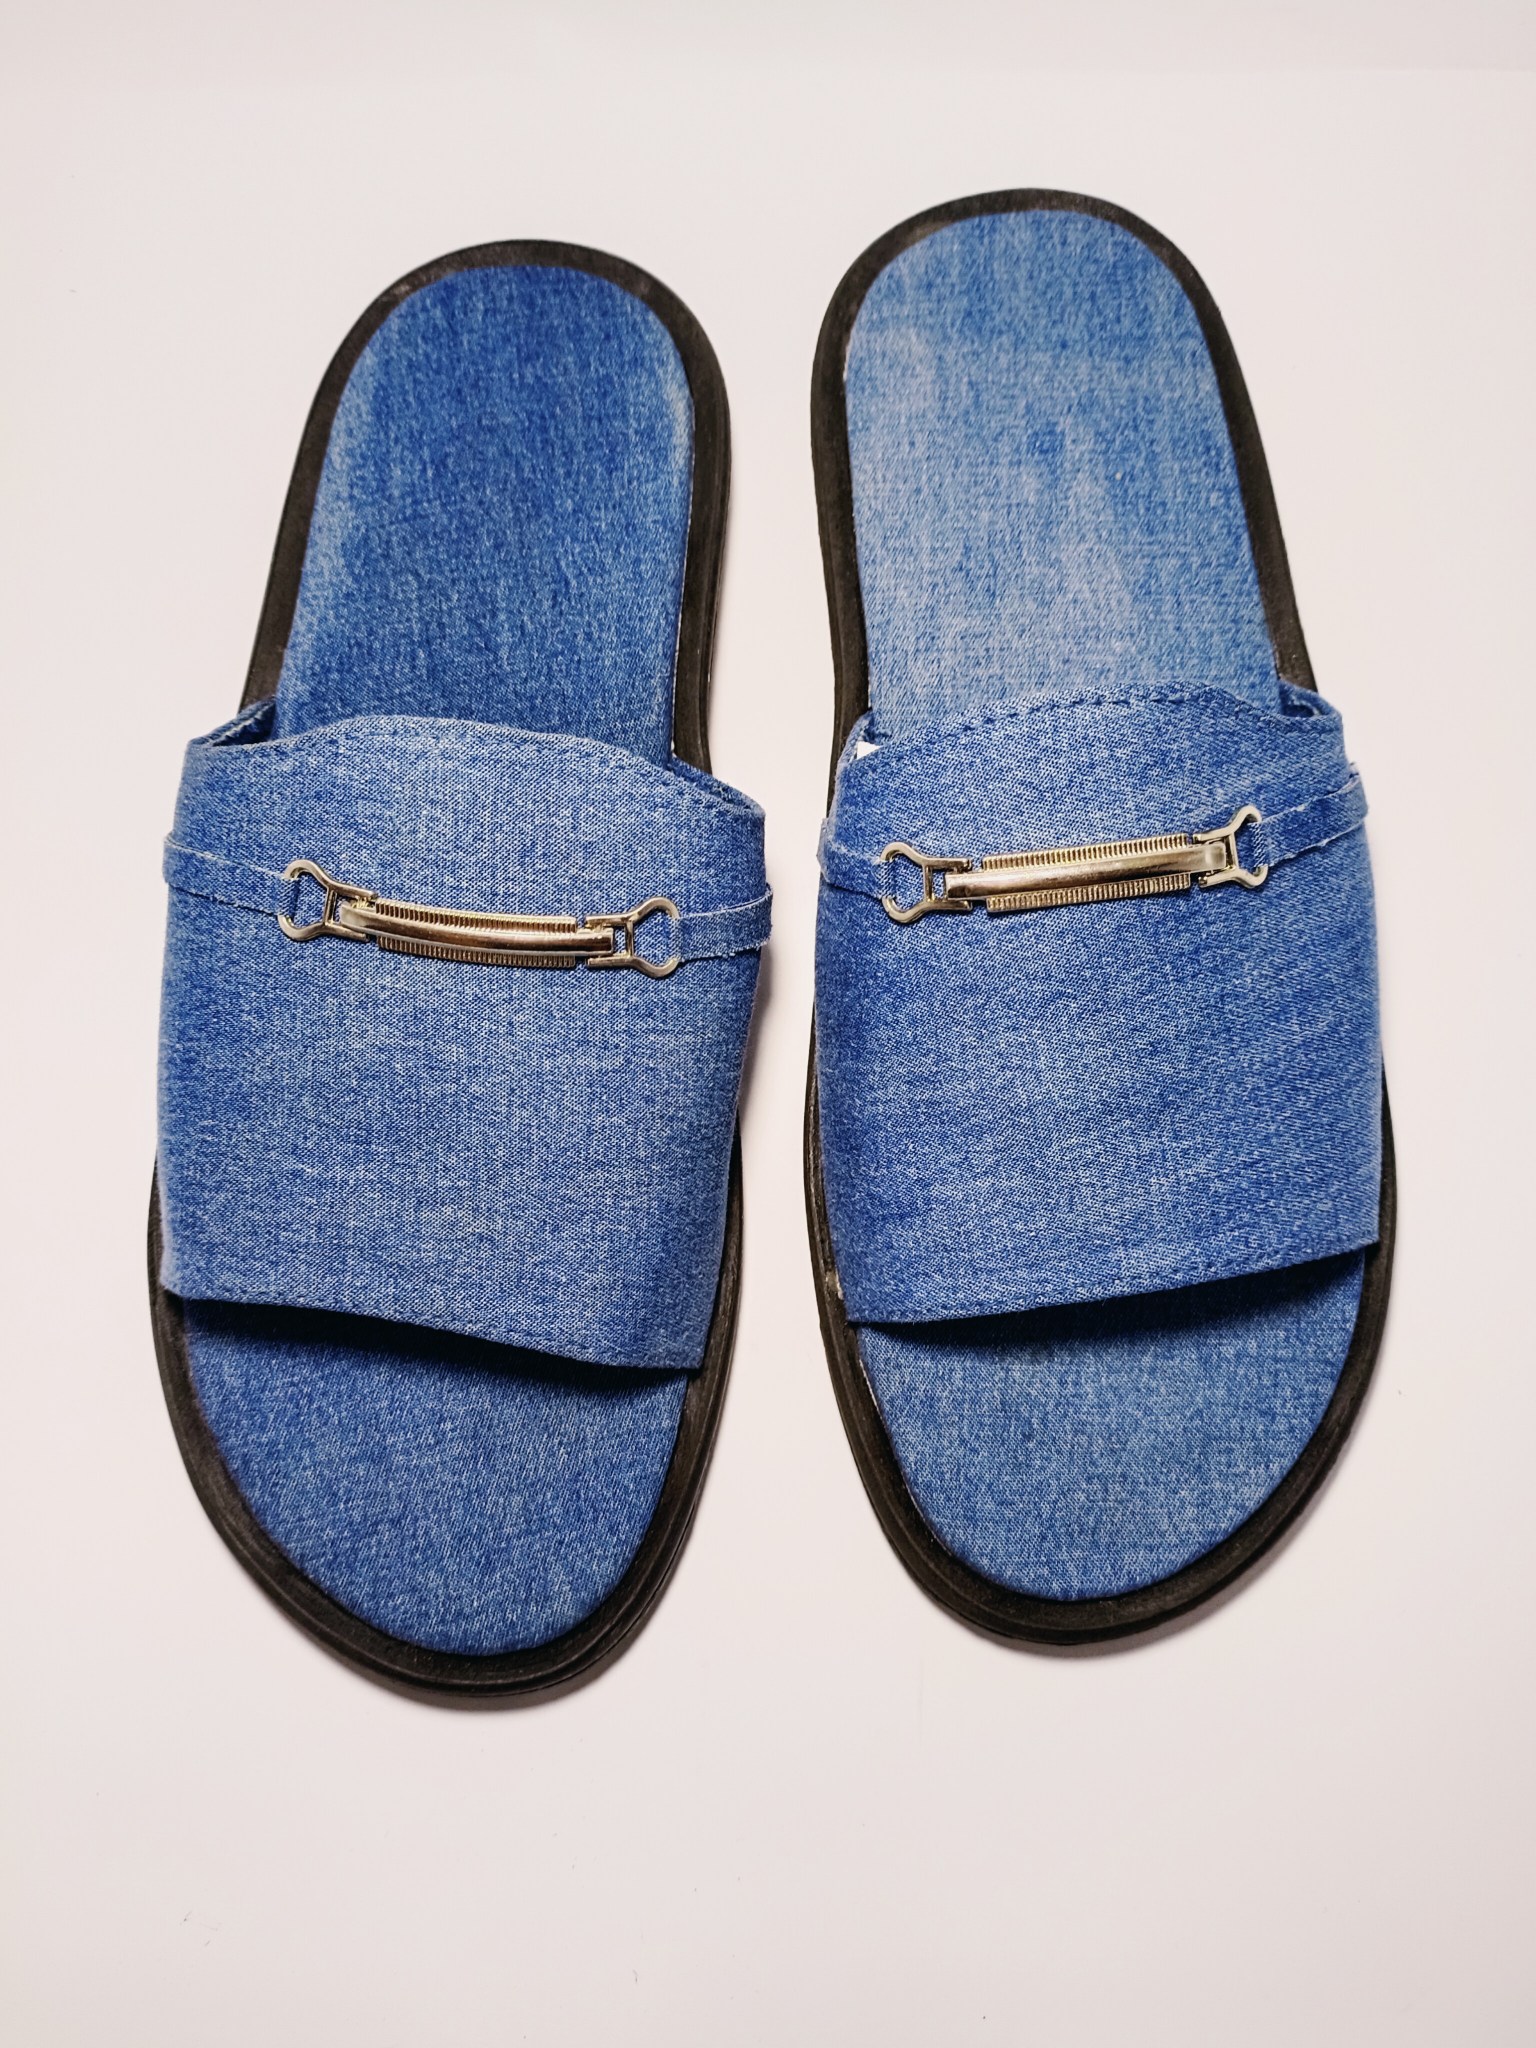 True Religion Men's Slides Slippers Blue Denim Buddha Logo Soft Fuzzy 9-10  New | eBay